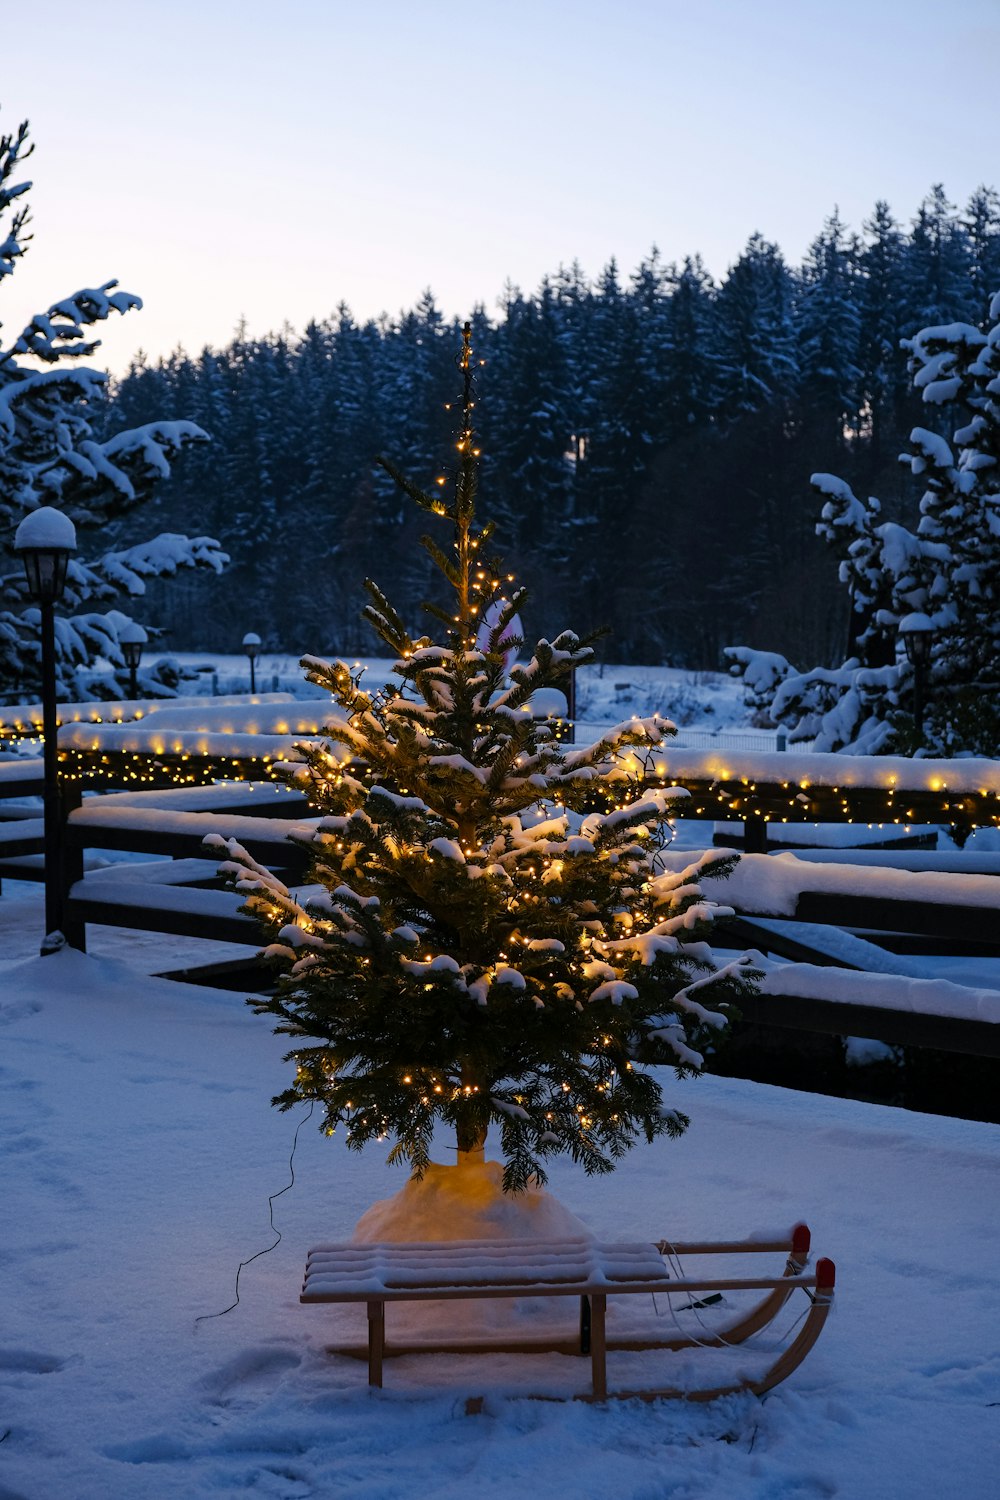 Uma pequena árvore de Natal é iluminada na neve